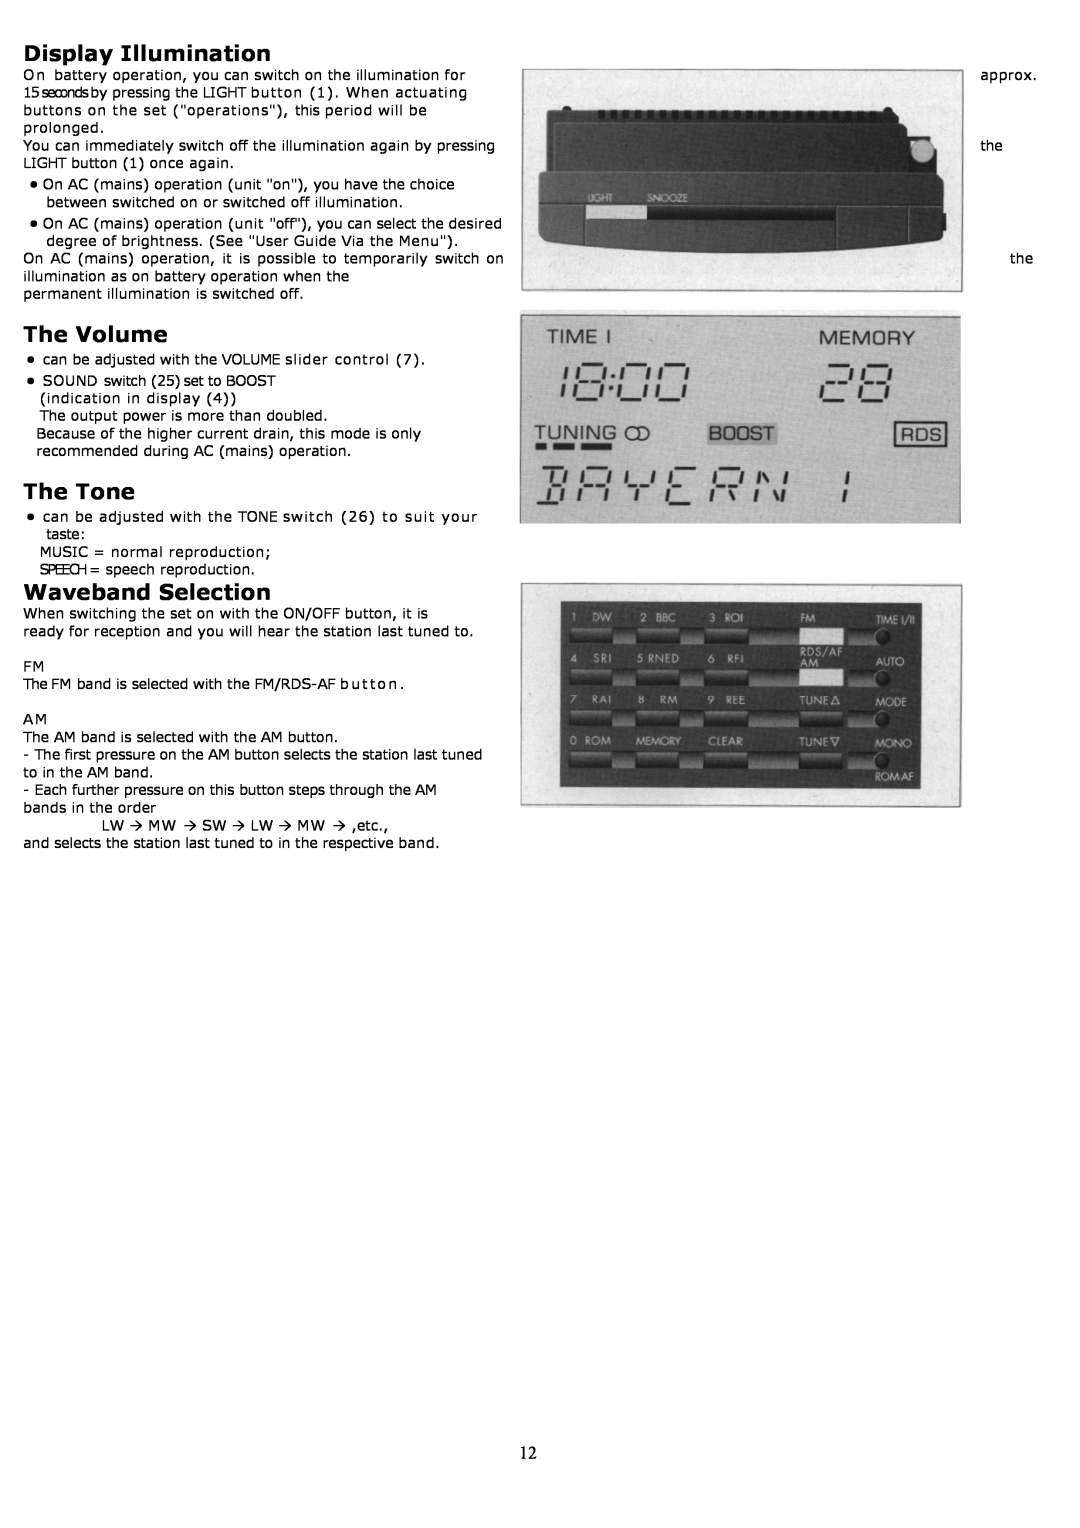 Grundig YB500 owner manual Display Illumination, The Volume, The Tone, Waveband Selection 